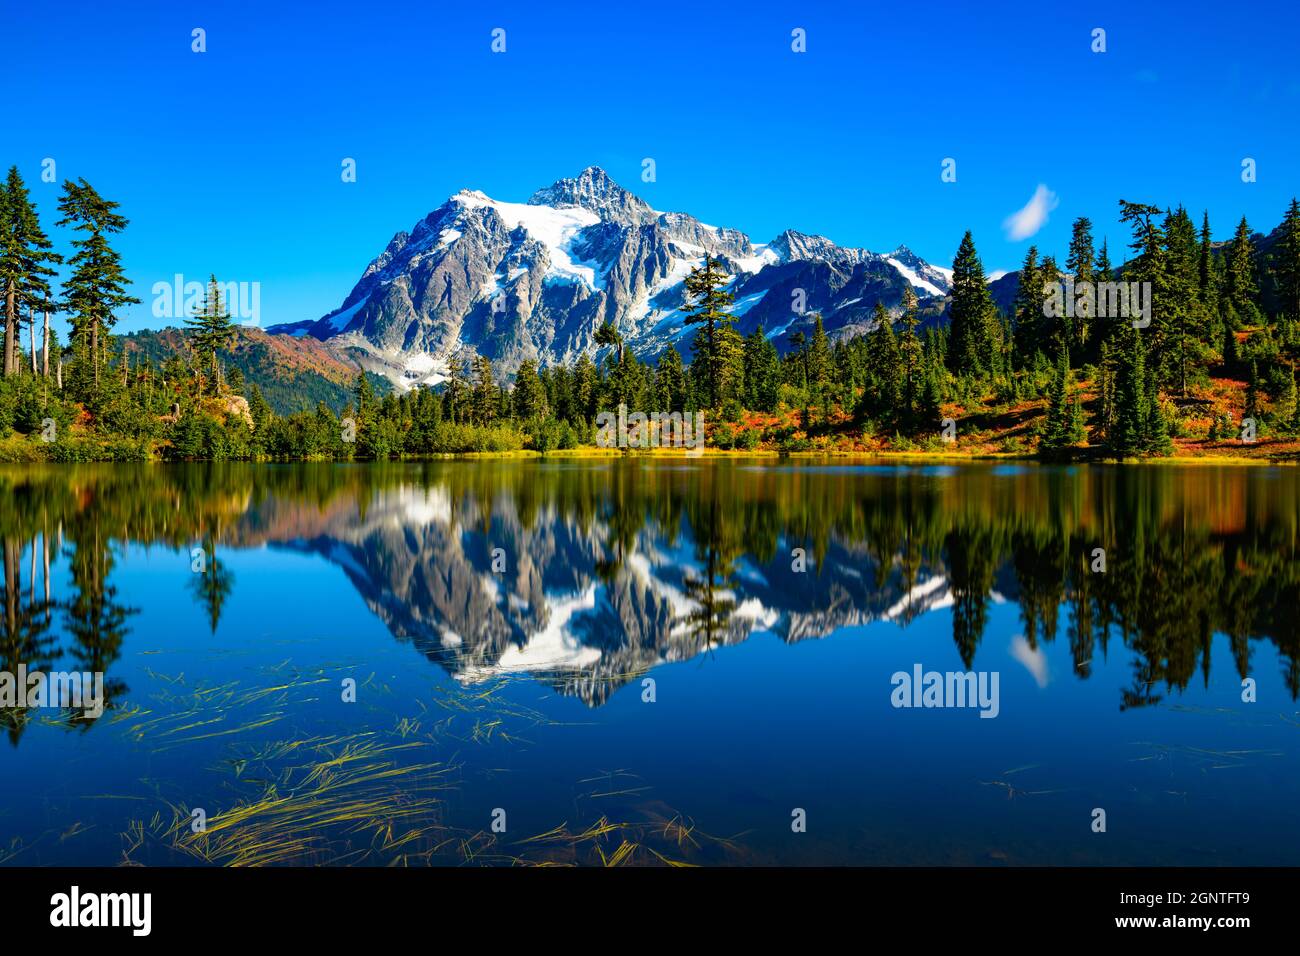 Die ikonische Ansicht des Mount Shuksan spiegelt sich in Picture Lake während des Herbstes im pazifischen Nordwesten der Vereinigten Staaten wider Stockfoto